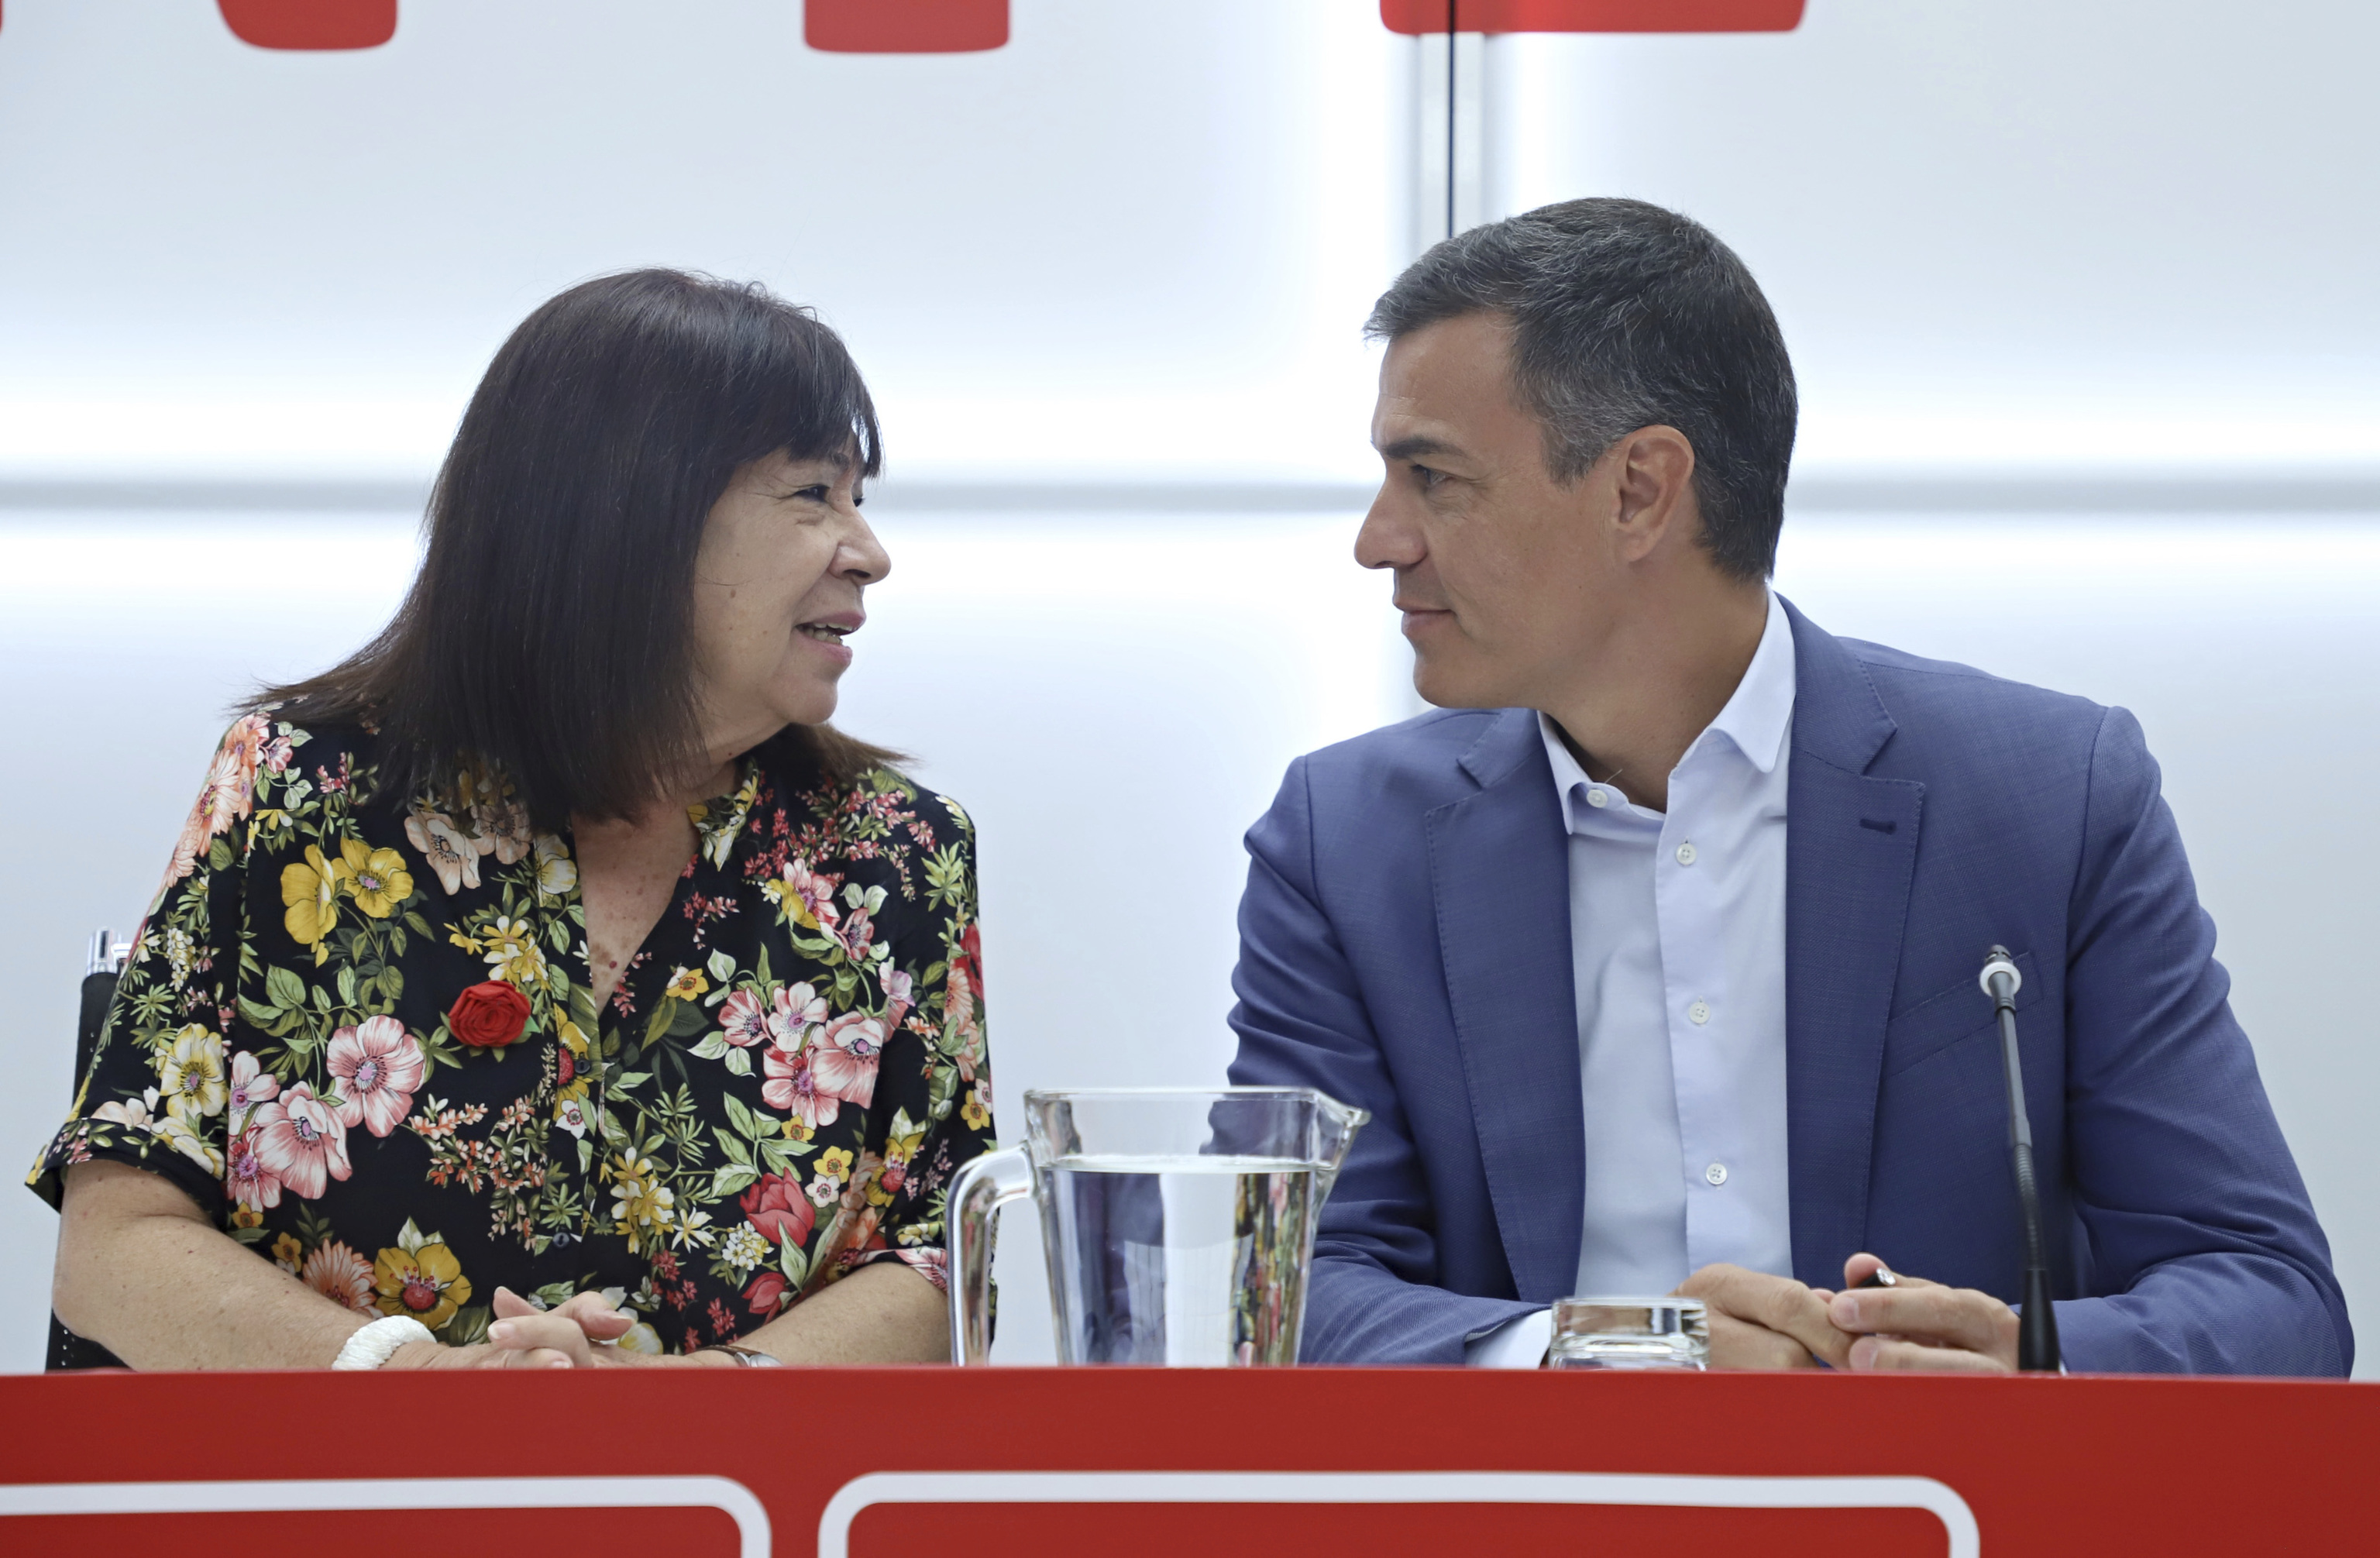 Snchez presidiendo la Comisin Ejecutiva Federal del PSOE junto a Cristina Narbona